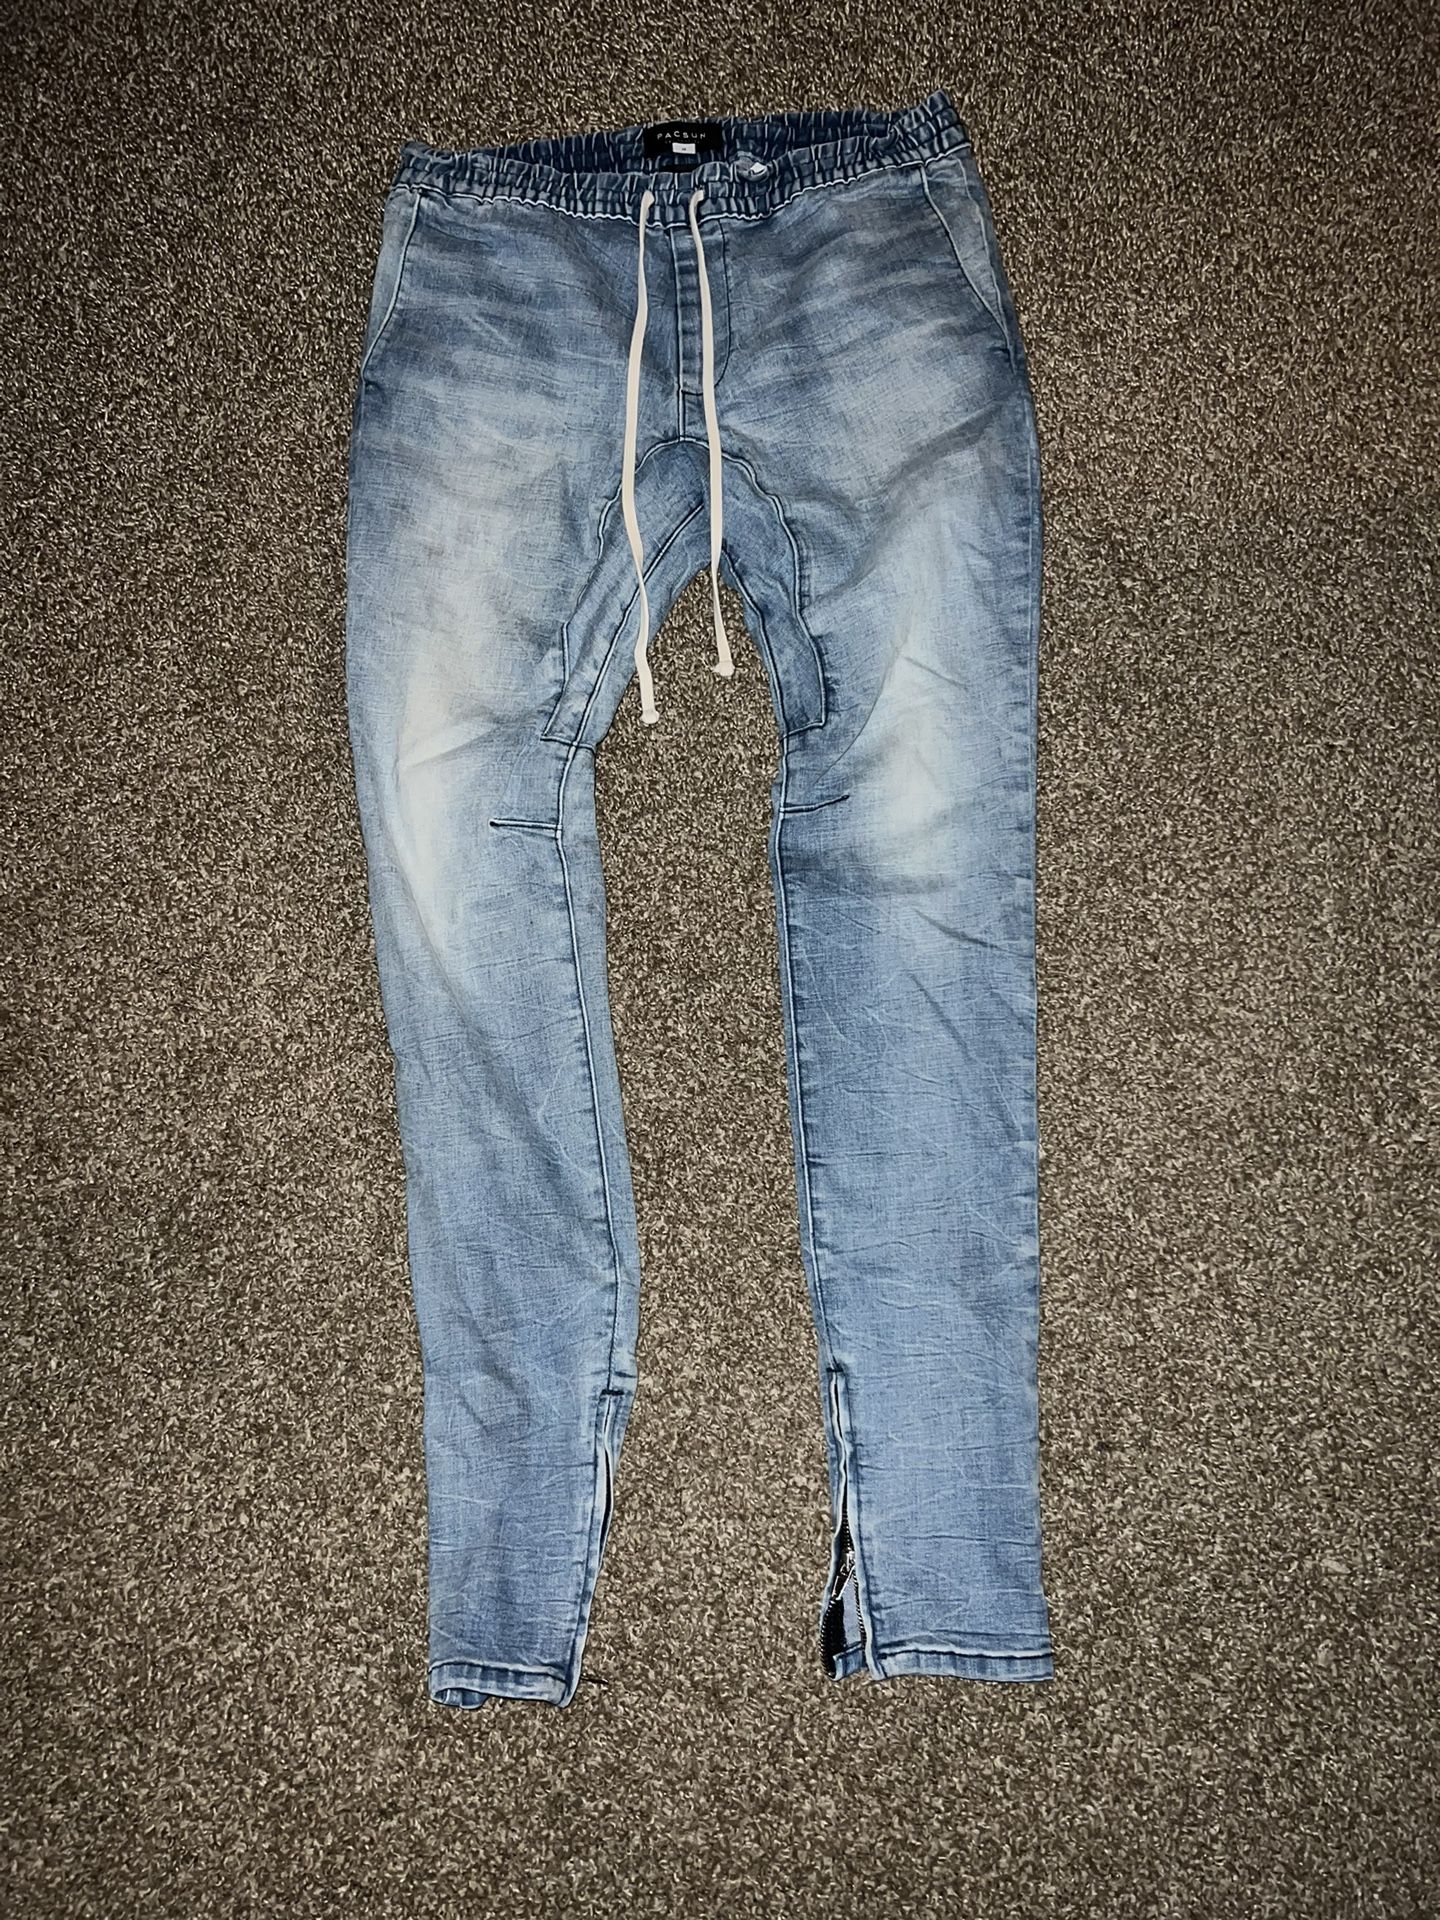 Pacsun Jeans Joggers